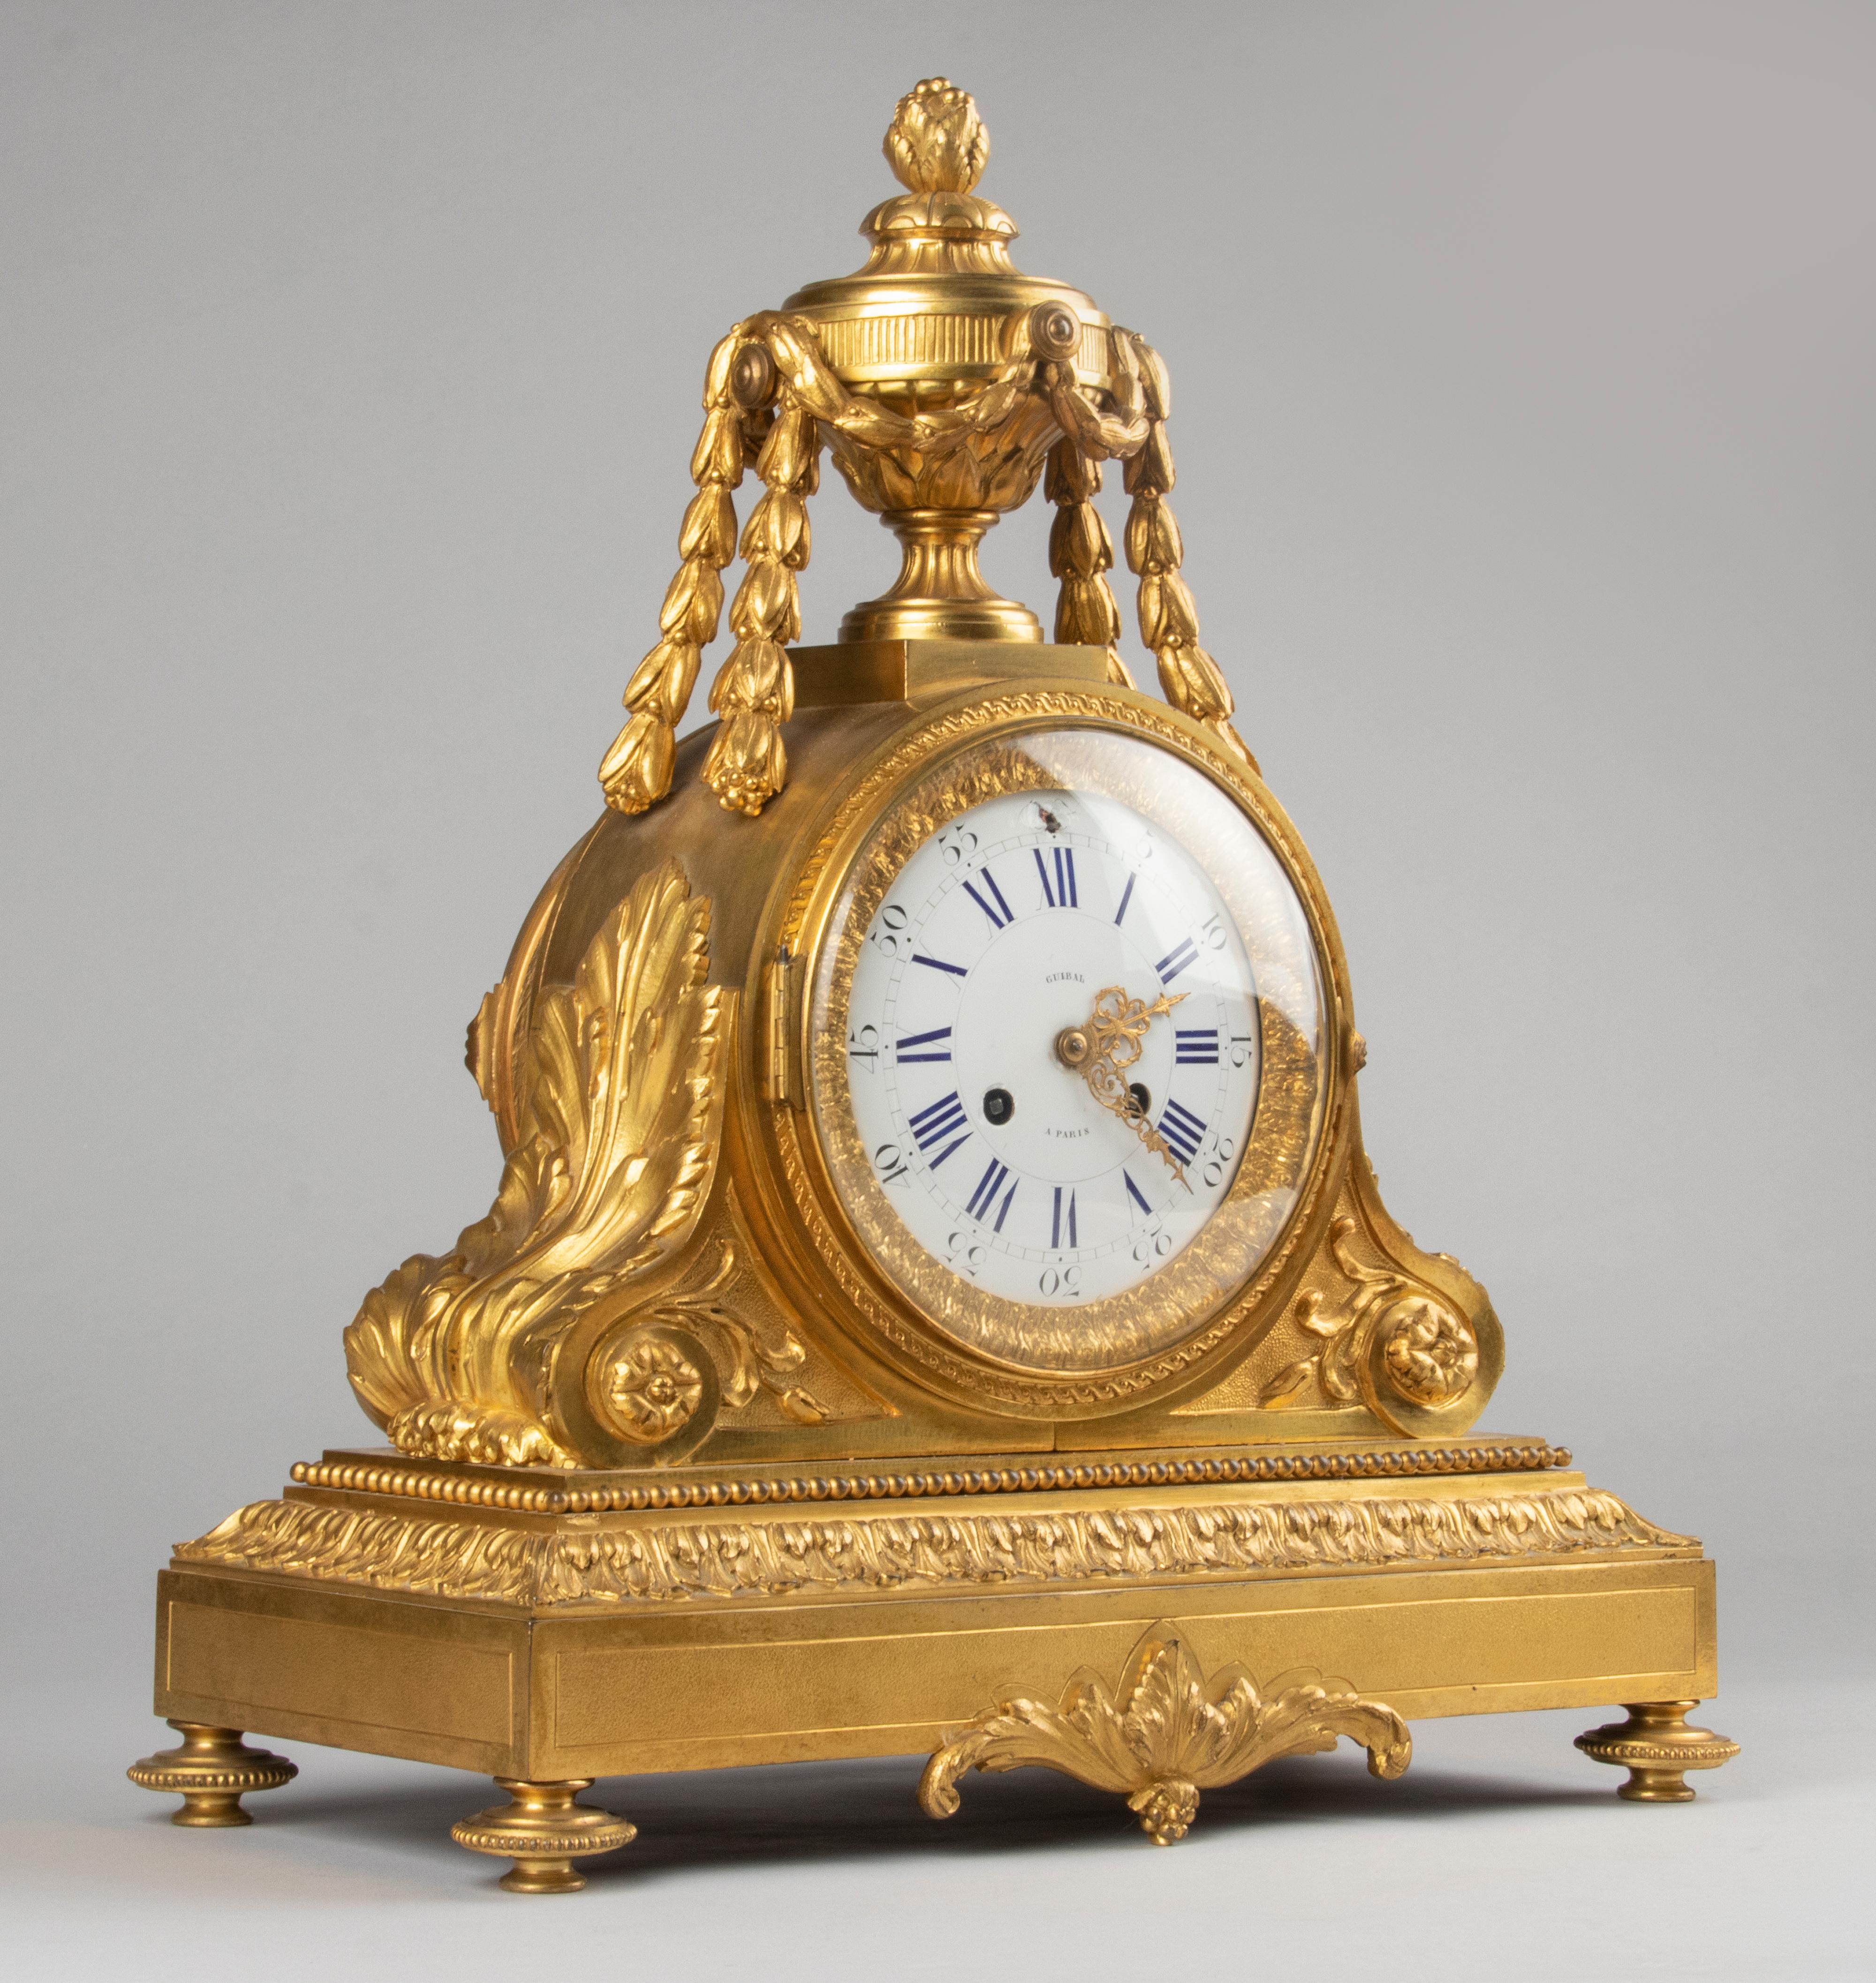 Eine schöne und große französische Kaminsimsuhr im Louis-XVI-Stil aus dem Ende der Periode Napoleons III, 1870-1880. Die Uhr ist aus Bronze gegossen und feuervergoldet, das Zifferblatt ist aus emailliertem Kupfer. Ringsum reich verziert mit